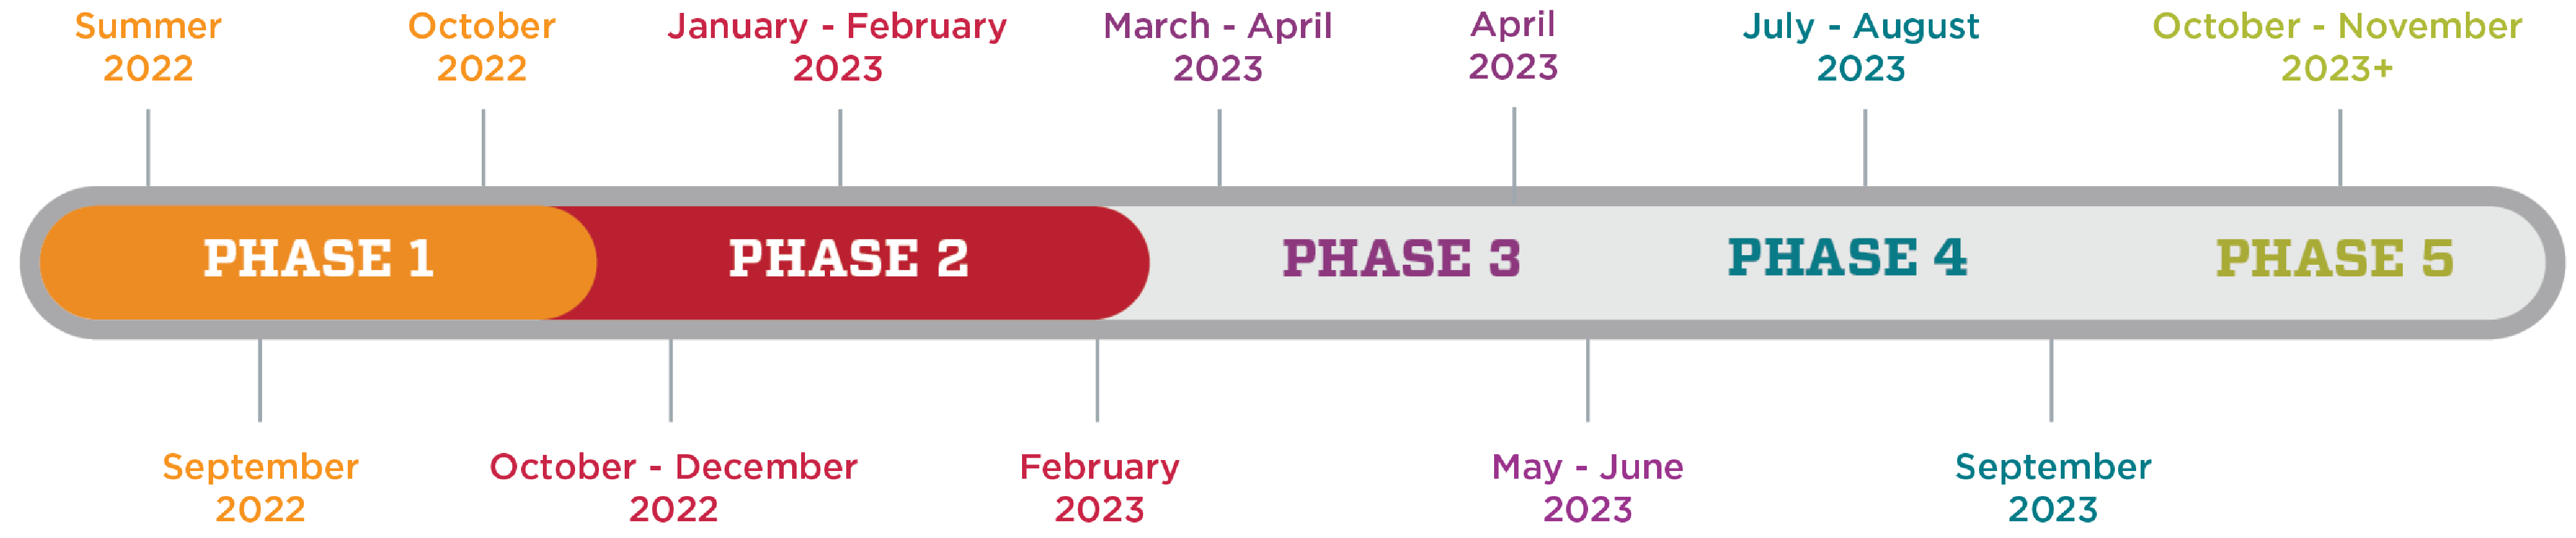 Eine Grafik, die den Zeitplan der HSC-Klimaumfrage zeigt. Phase 1 ist von Sommer 2022 bis Oktober 2022. Phase 2 ist von Oktober 2022 bis Februar 2023. Phase 3 ist von März 2023 bis Juni 2023. Phase 4 ist von Juli 2023 bis September 2023. Phase 5 ist ab Oktober 2023.